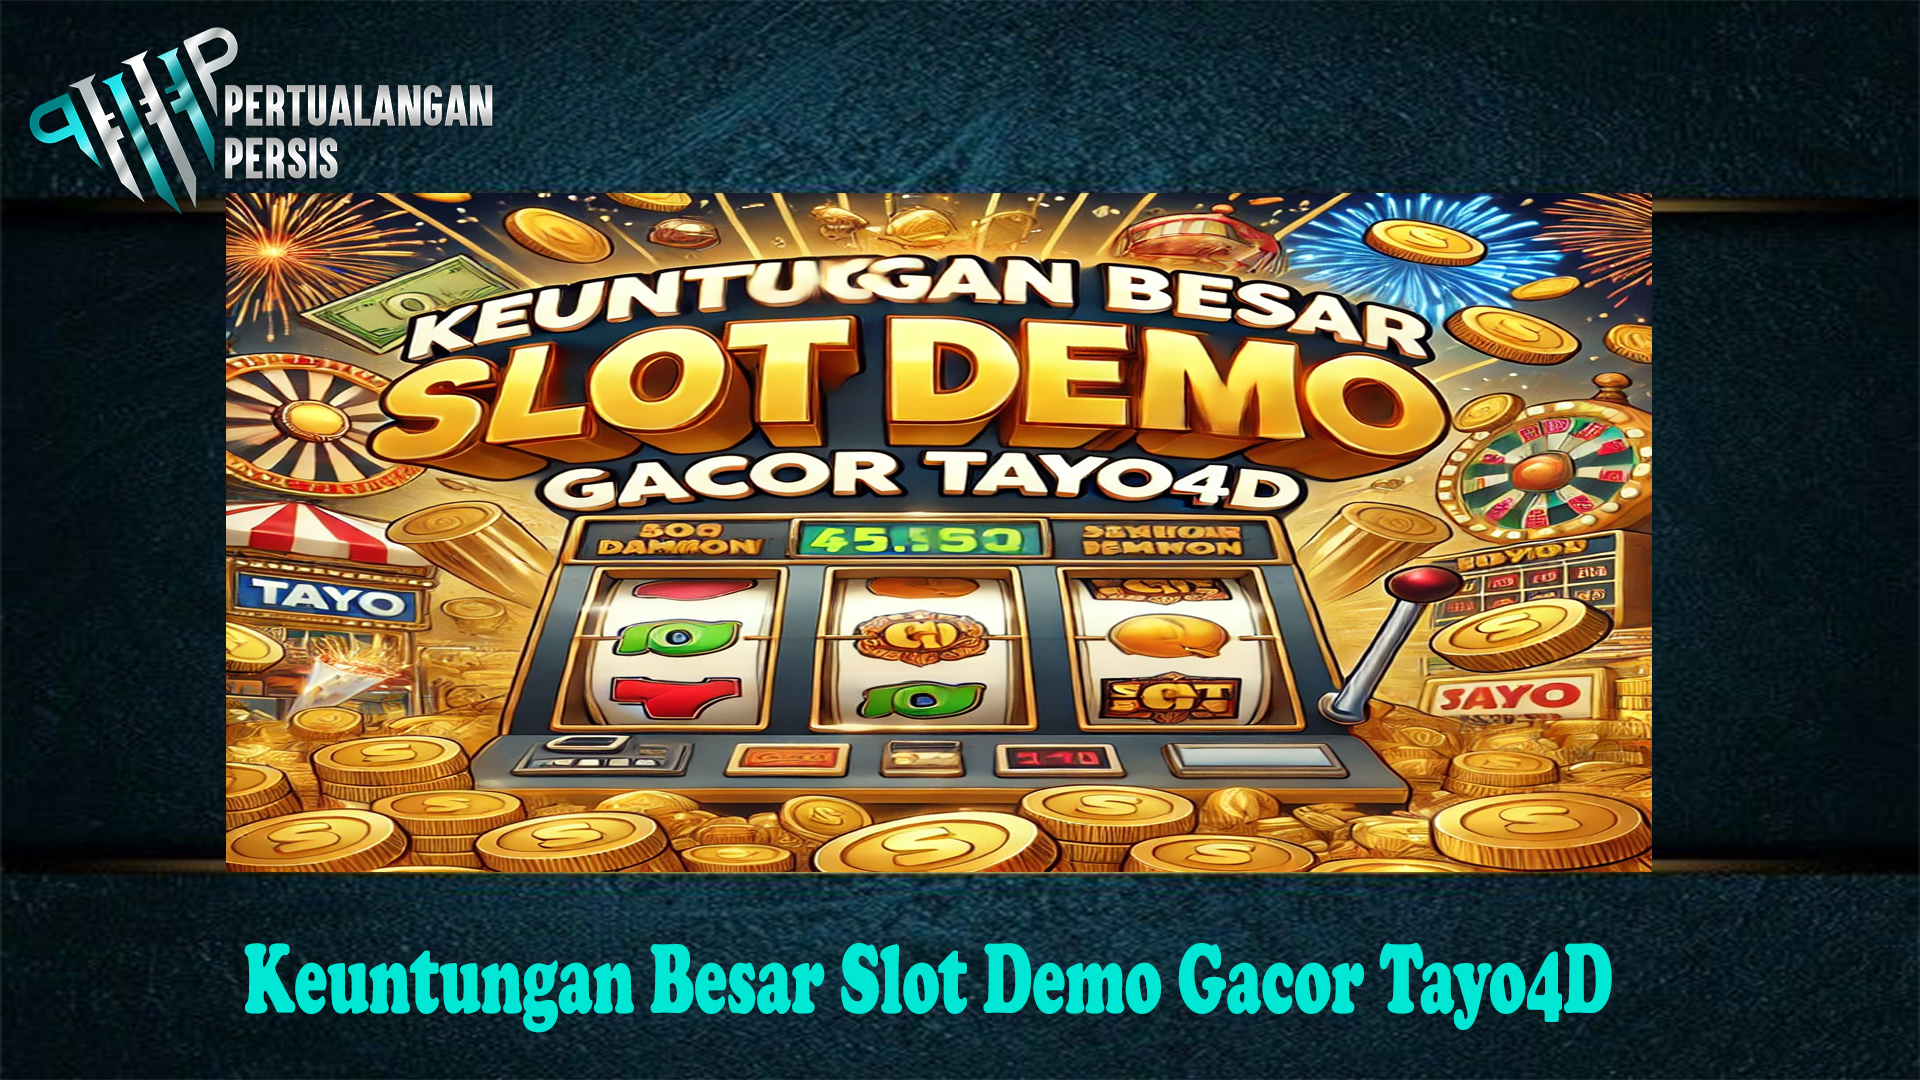 Keuntungan Besar Slot Demo Gacor Tayo4D